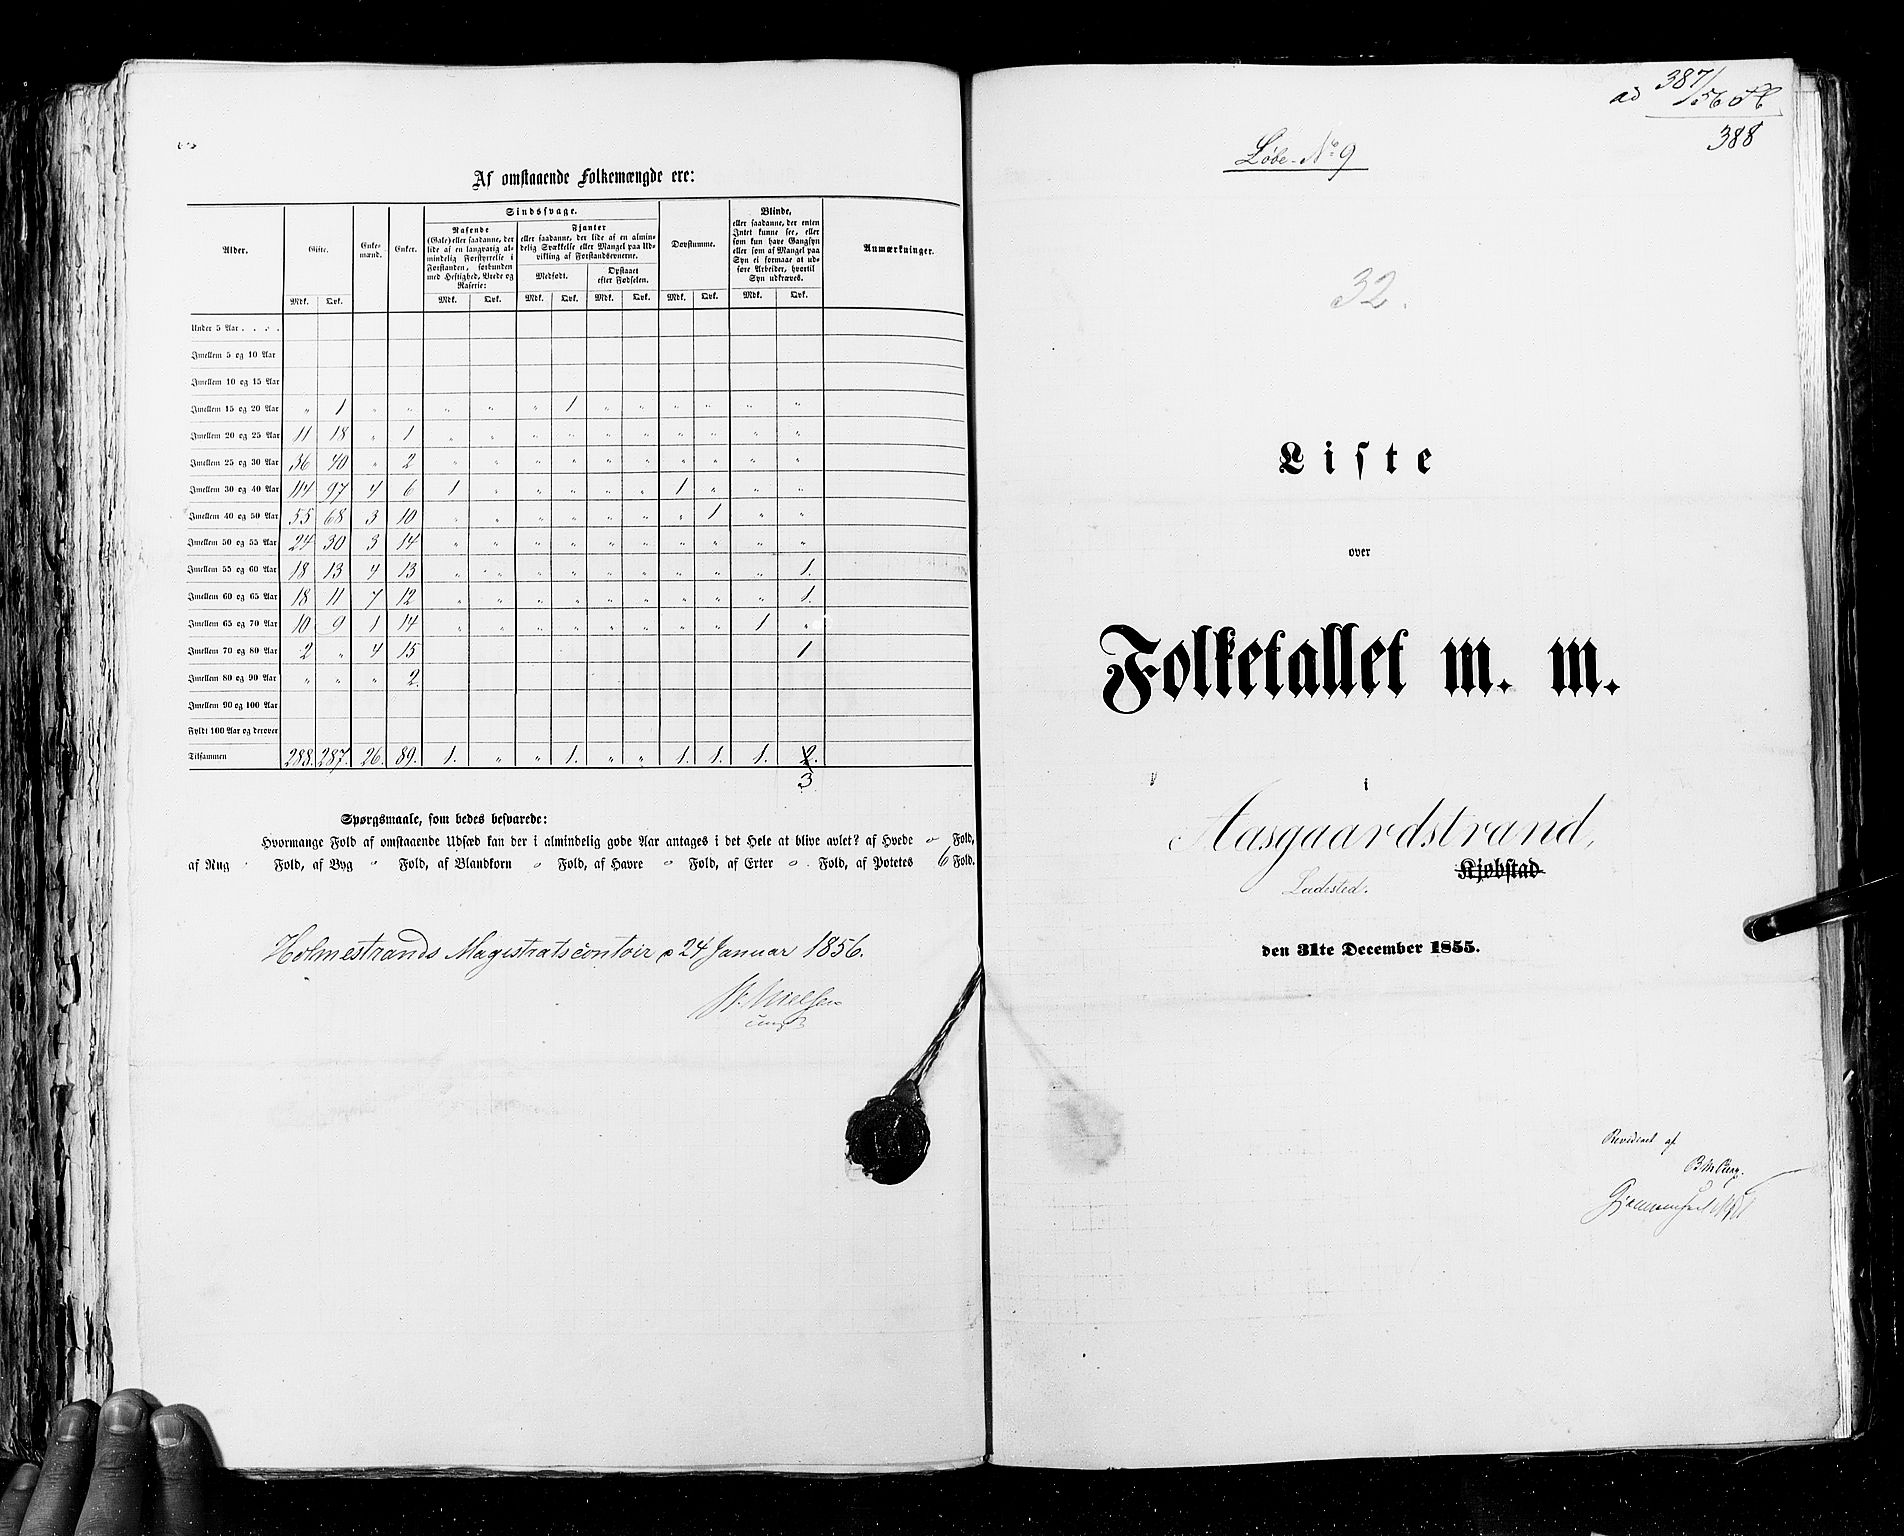 RA, Folketellingen 1855, bind 7: Kjøpsteder og ladesteder: Fredrikshald-Kragerø, 1855, s. 388